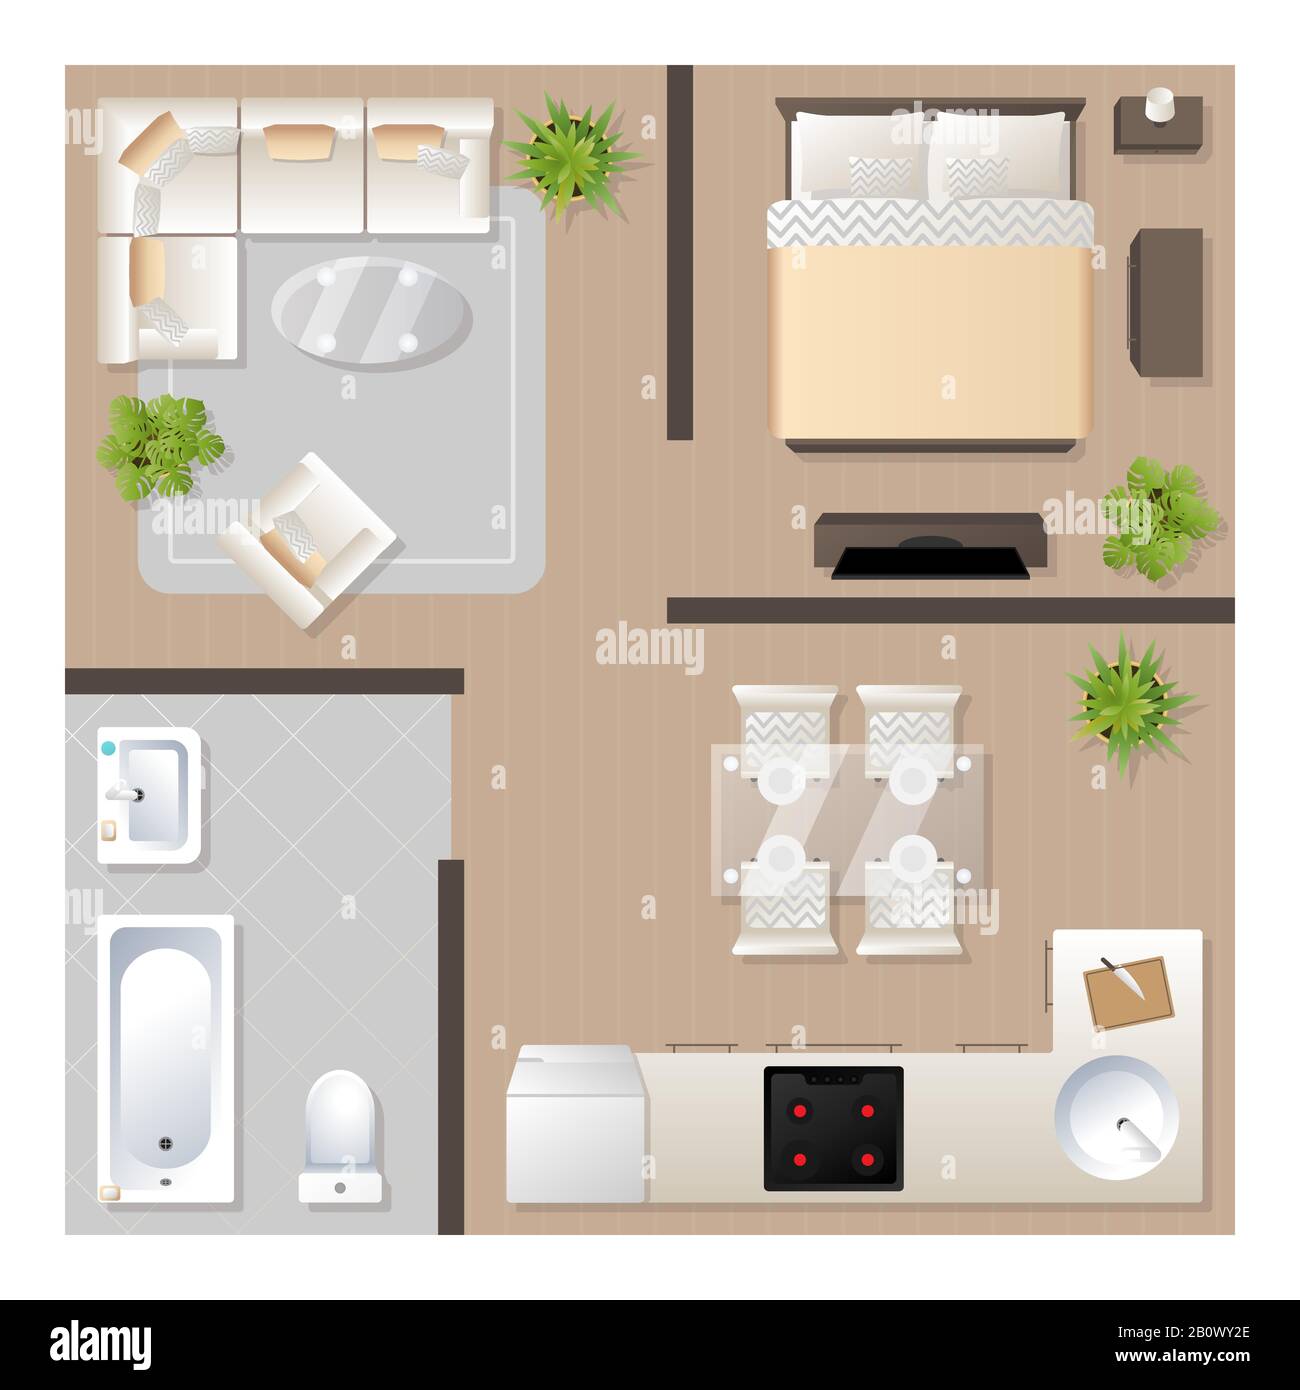 Design appartamento con mobili vista dall'alto, pianta architettonica,  cucina, bagno, camera da letto e soggiorno, illustrazione vettoriale  Immagine e Vettoriale - Alamy